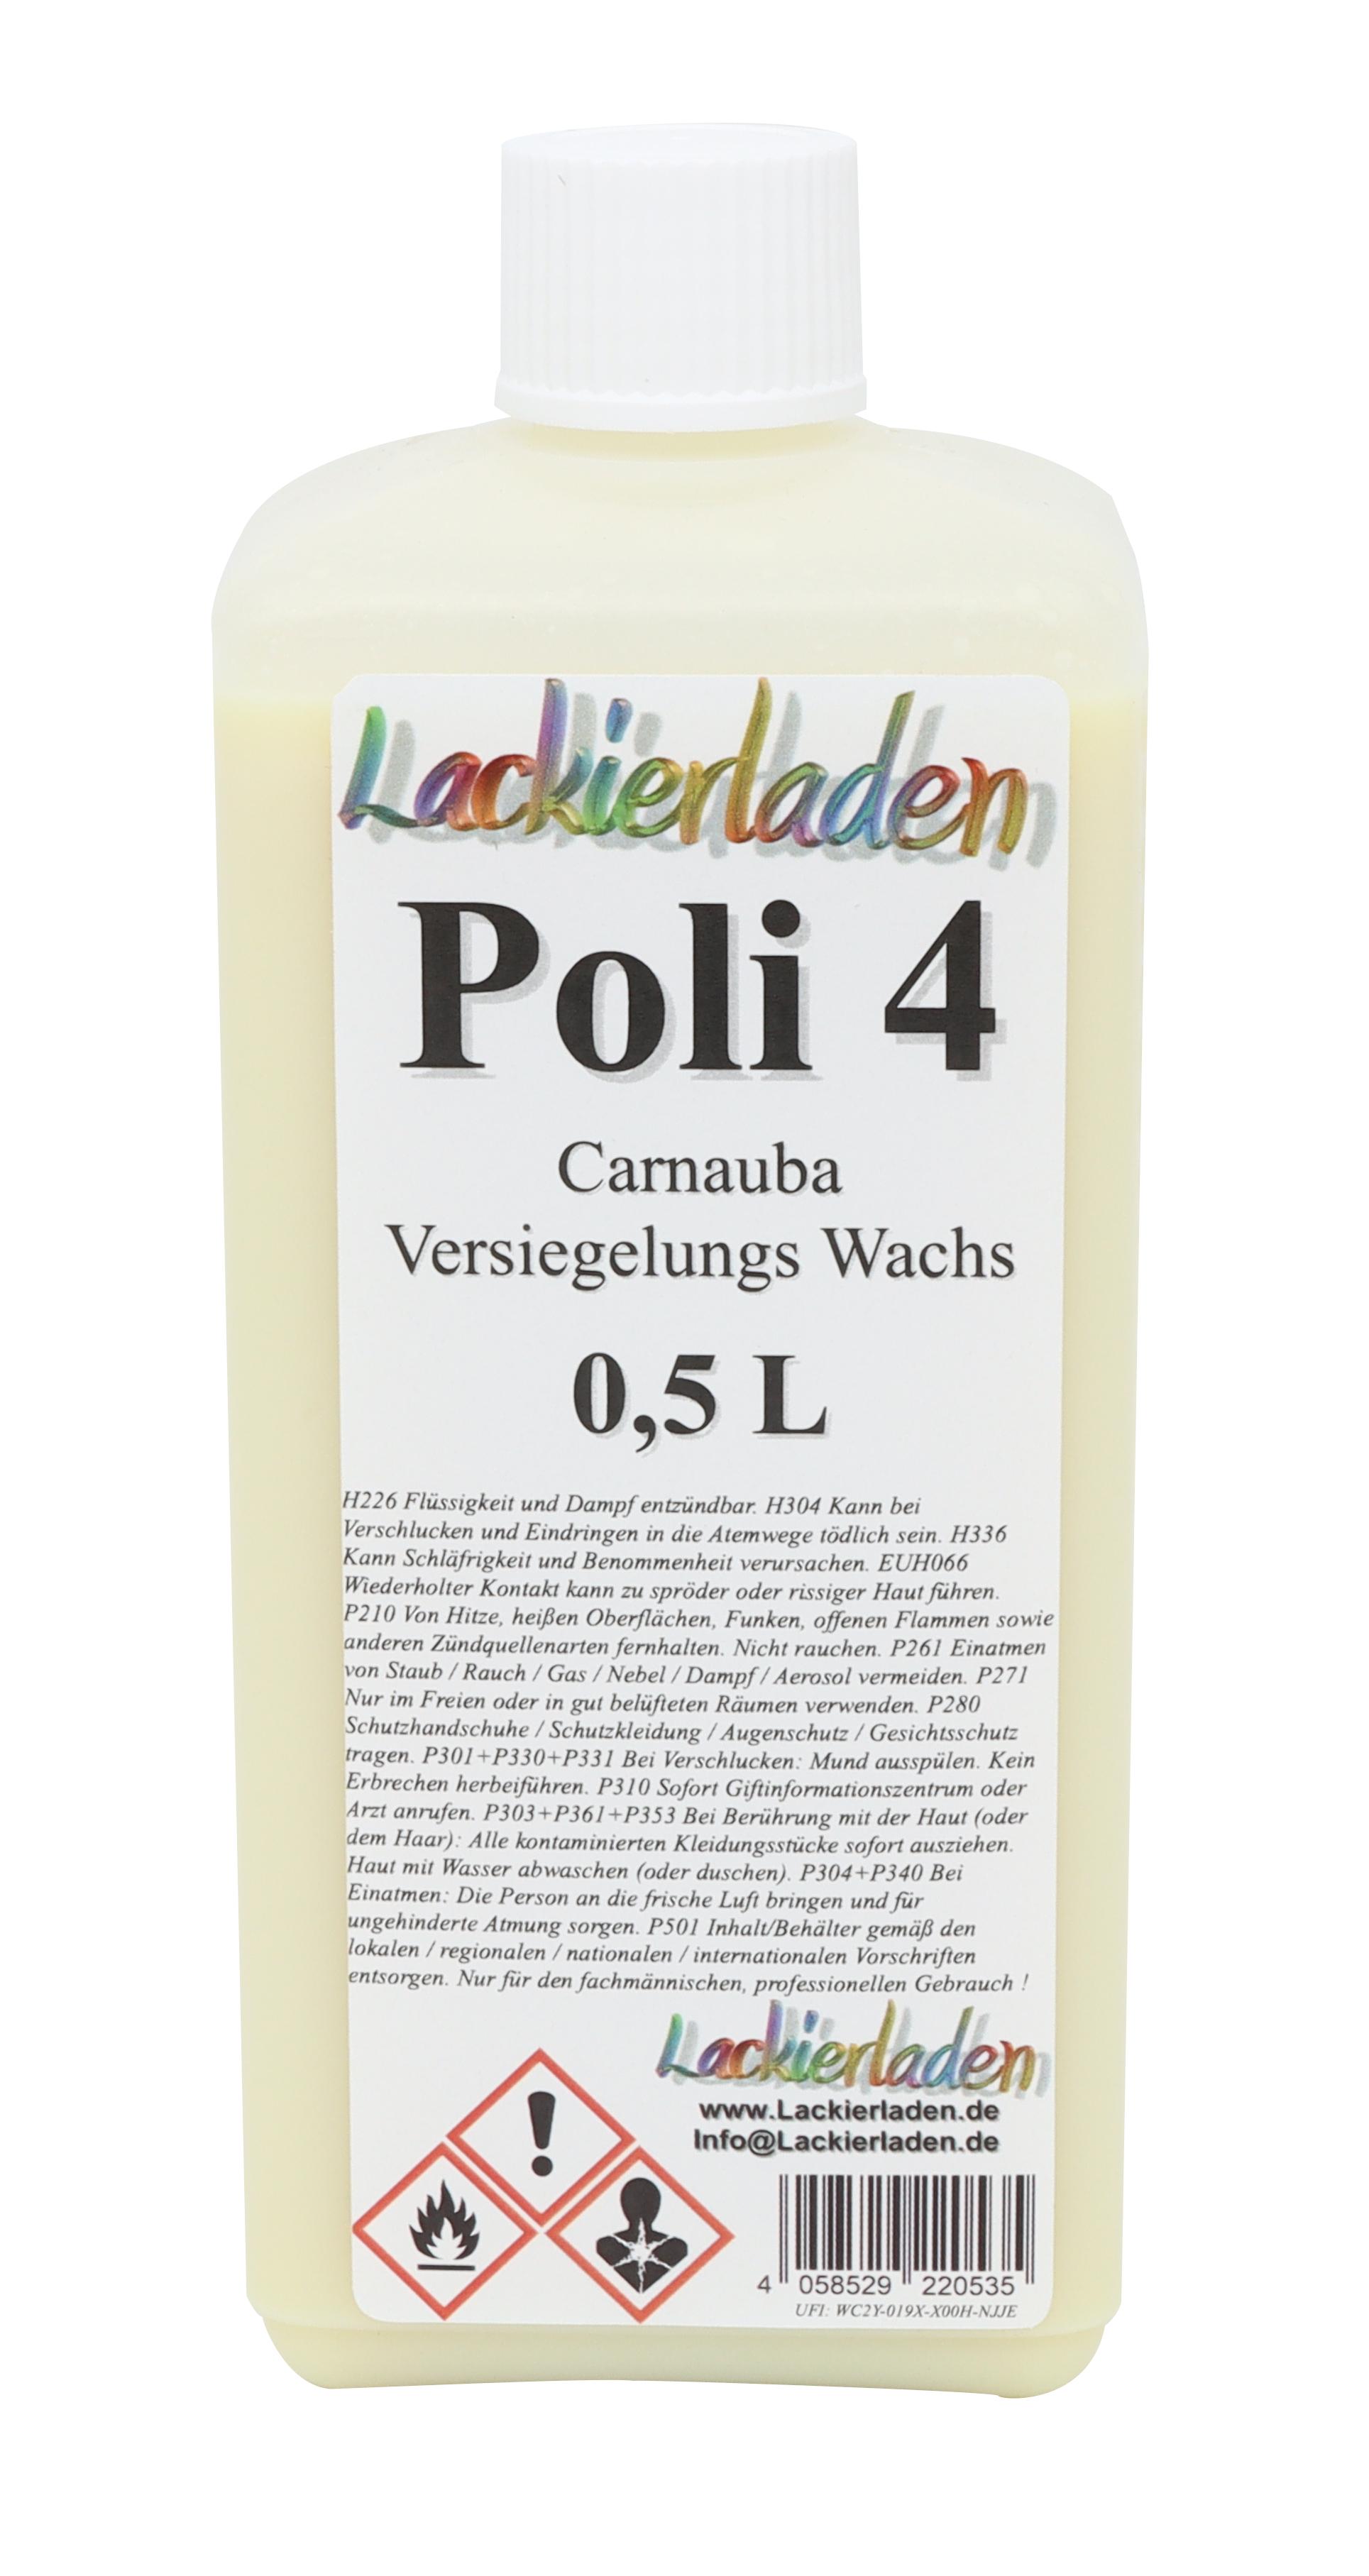 Poli 4 Versiegelungs Wachs (Carnauba Hard Wachs) 0,5 L | versiegeln Wax wachsen